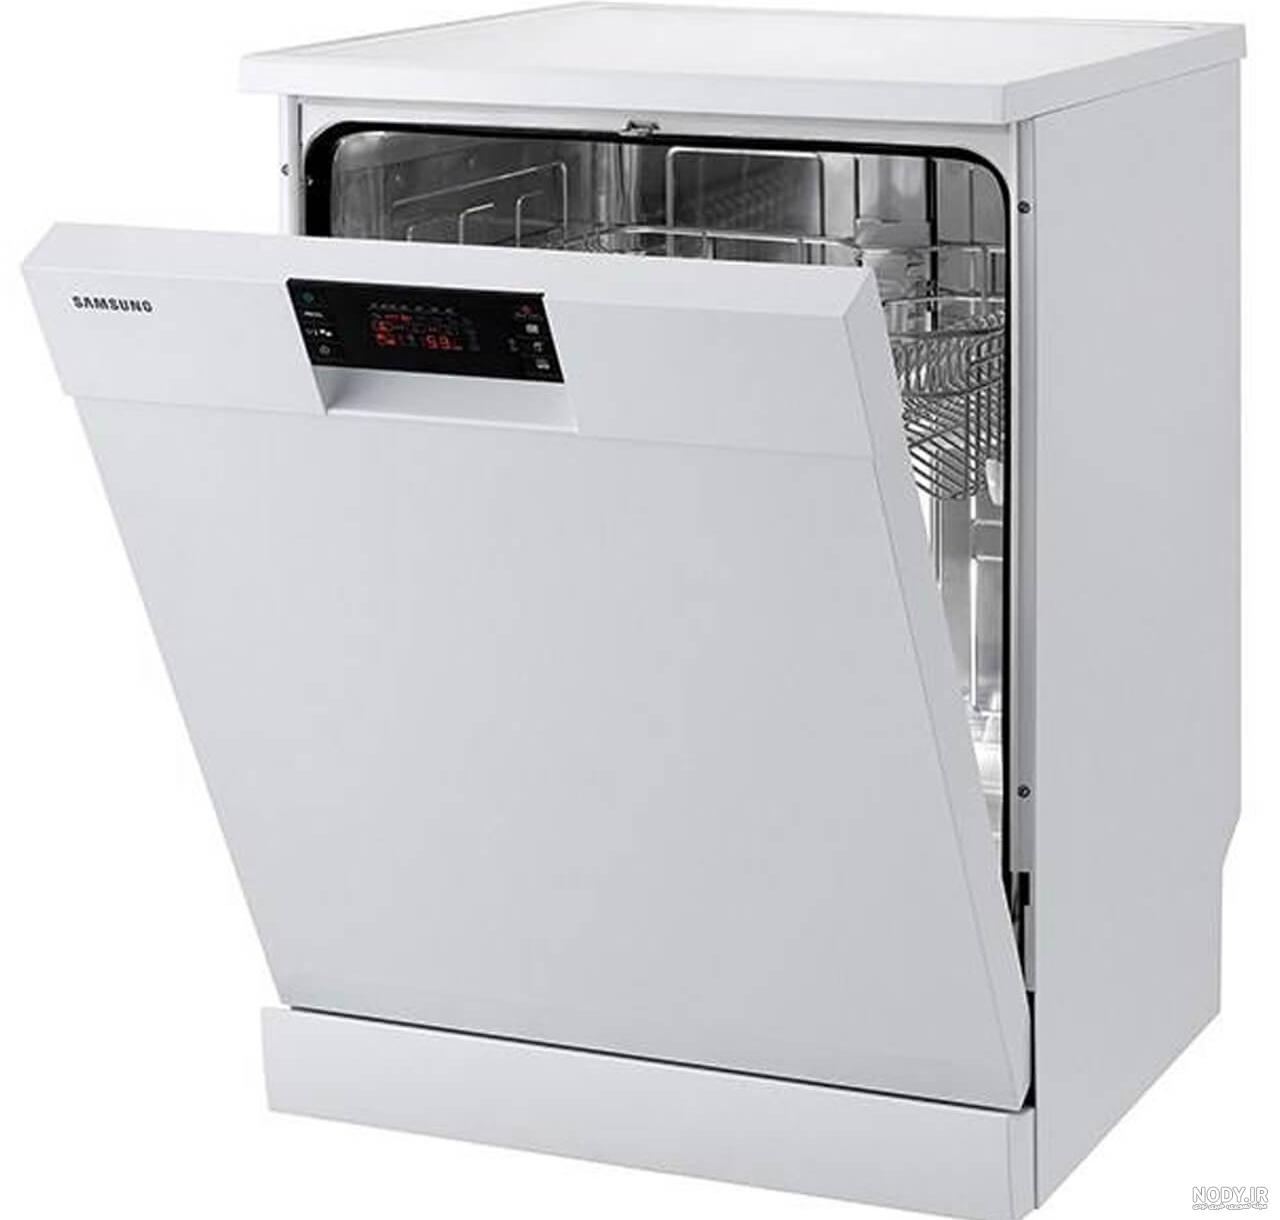 ماشین ظرفشویی سامسونگ مدل 5070 دیجی کالا